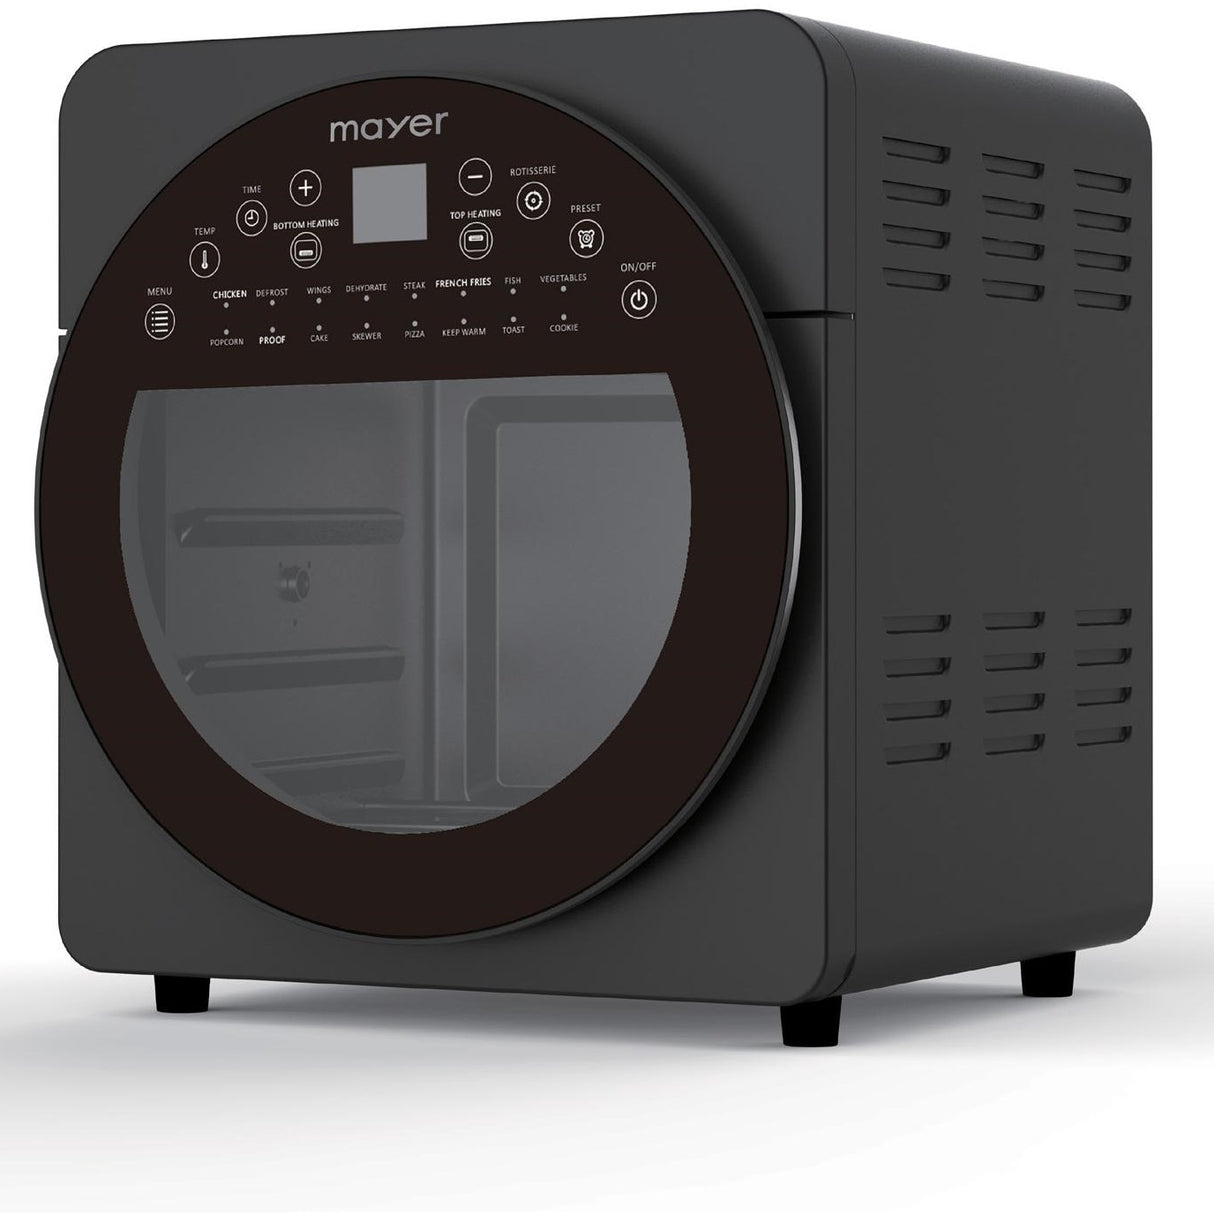 Mayer MMAO1450 Digital Air Oven 14.5L